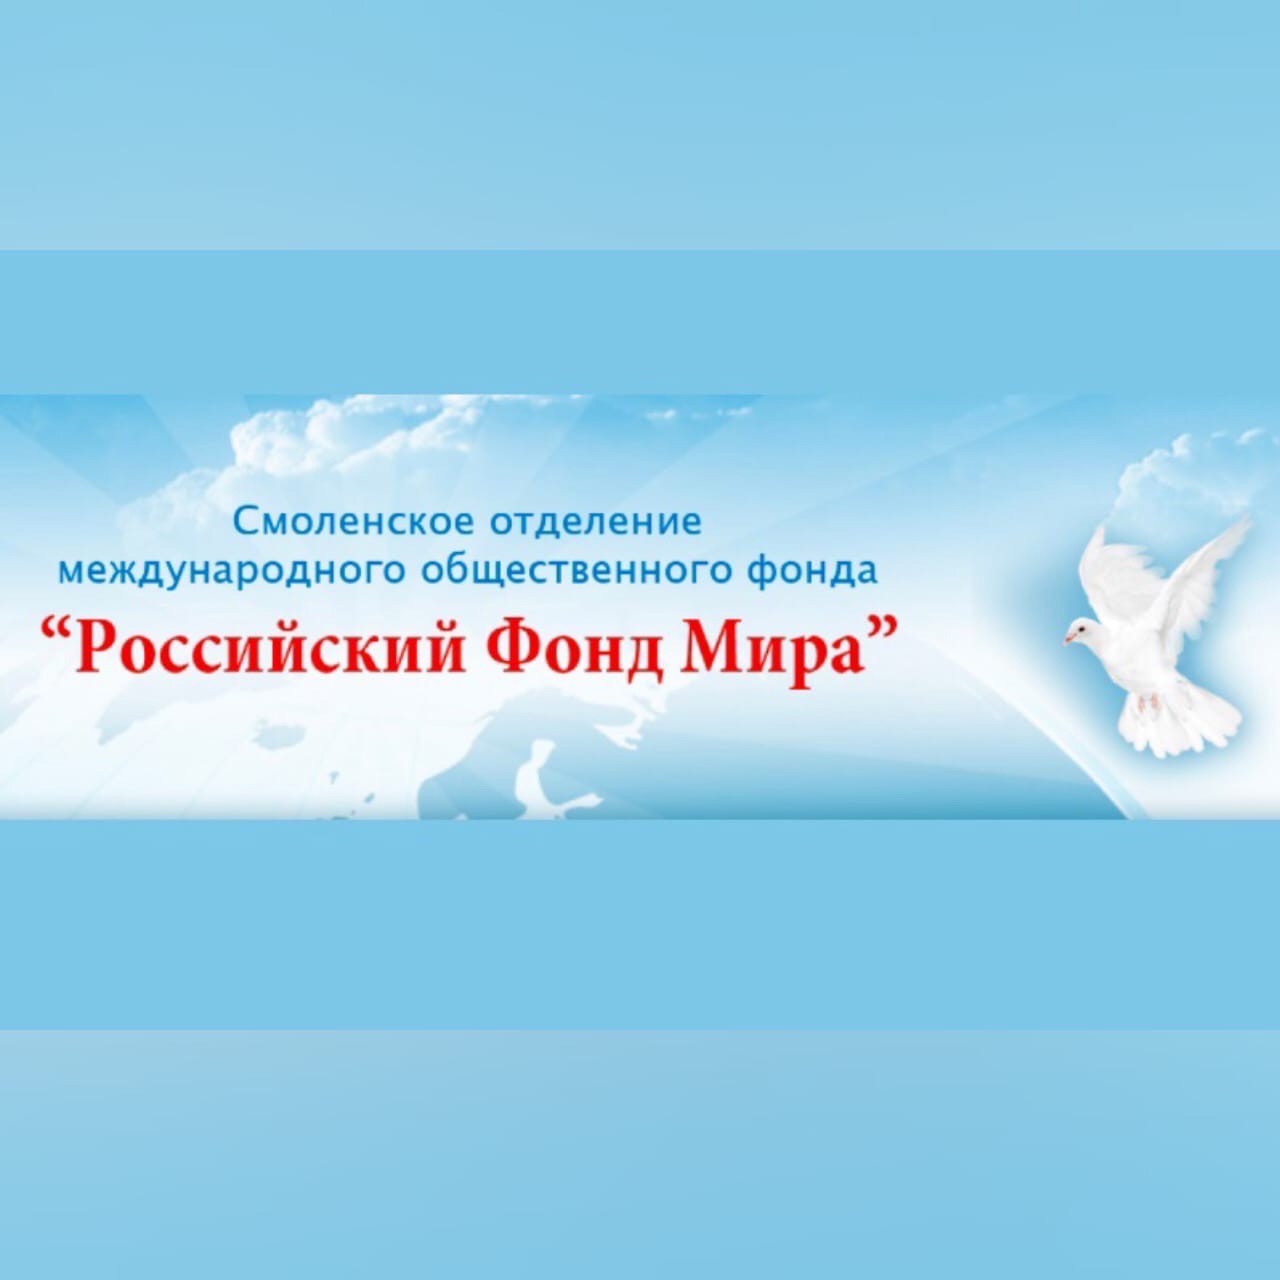 В Смоленске пройдет торжественное мероприятие, посвященное 60-летию Российского фонда мира